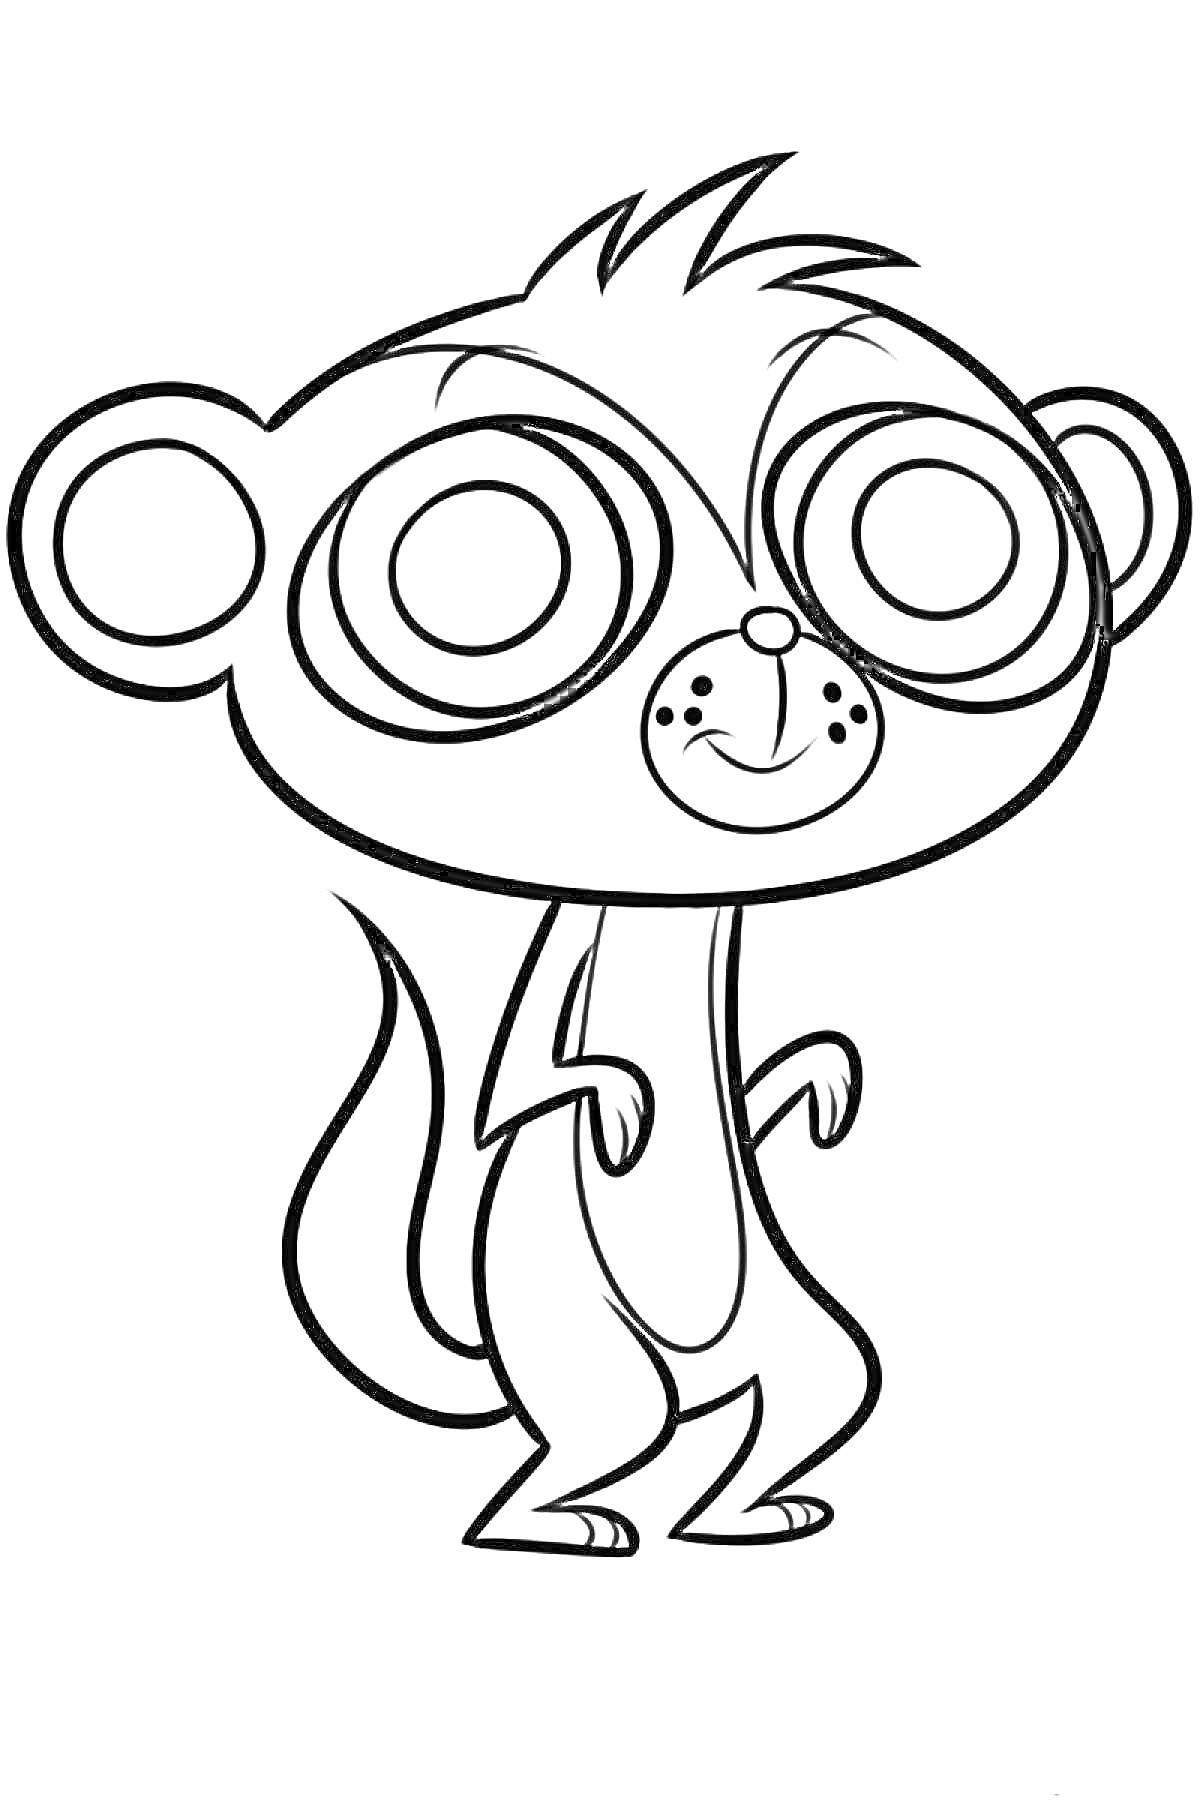 Раскраска Литл Пет Шоп, мультяшная обезьянка с большими глазами